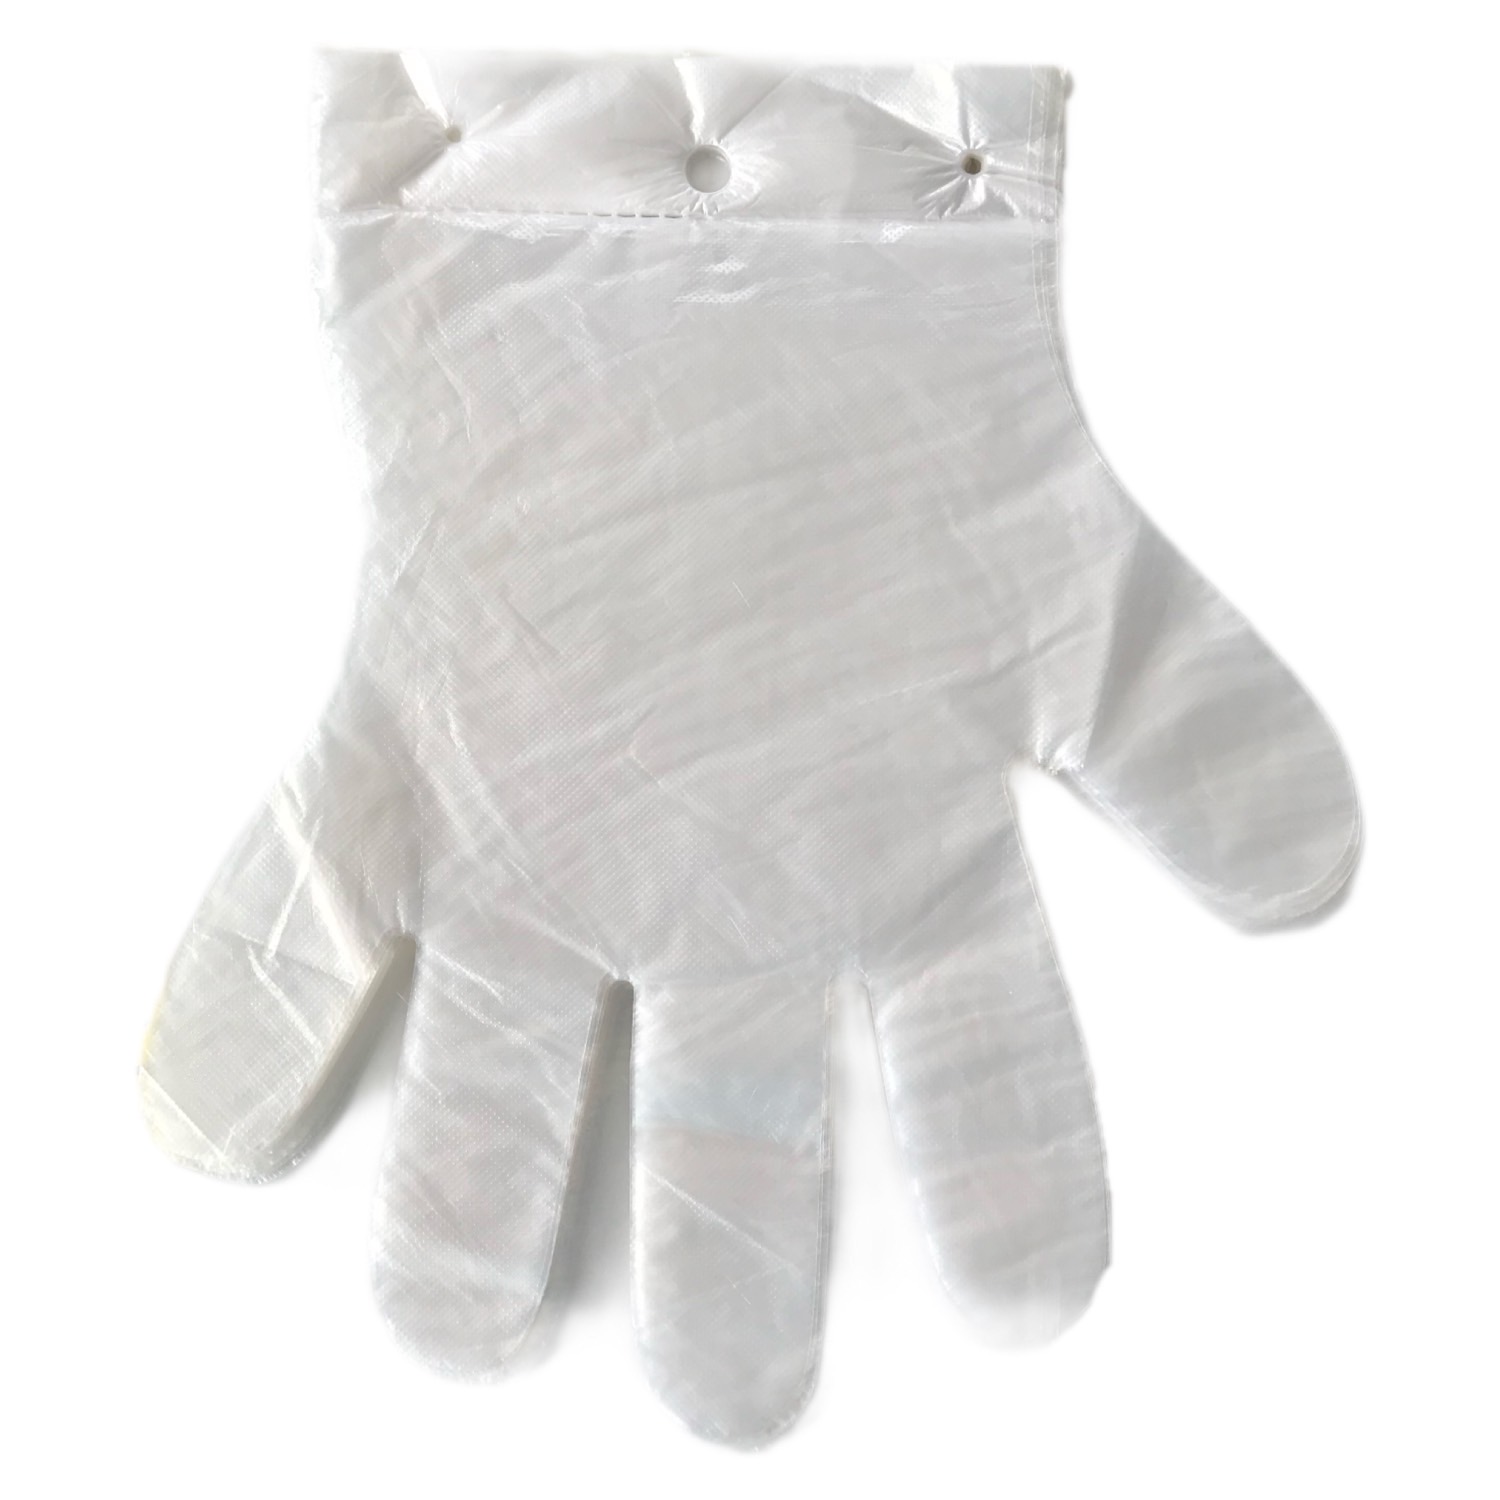 100 szt. / opakowanie Jednorazowe rękawiczki z tworzywa sztucznego PE